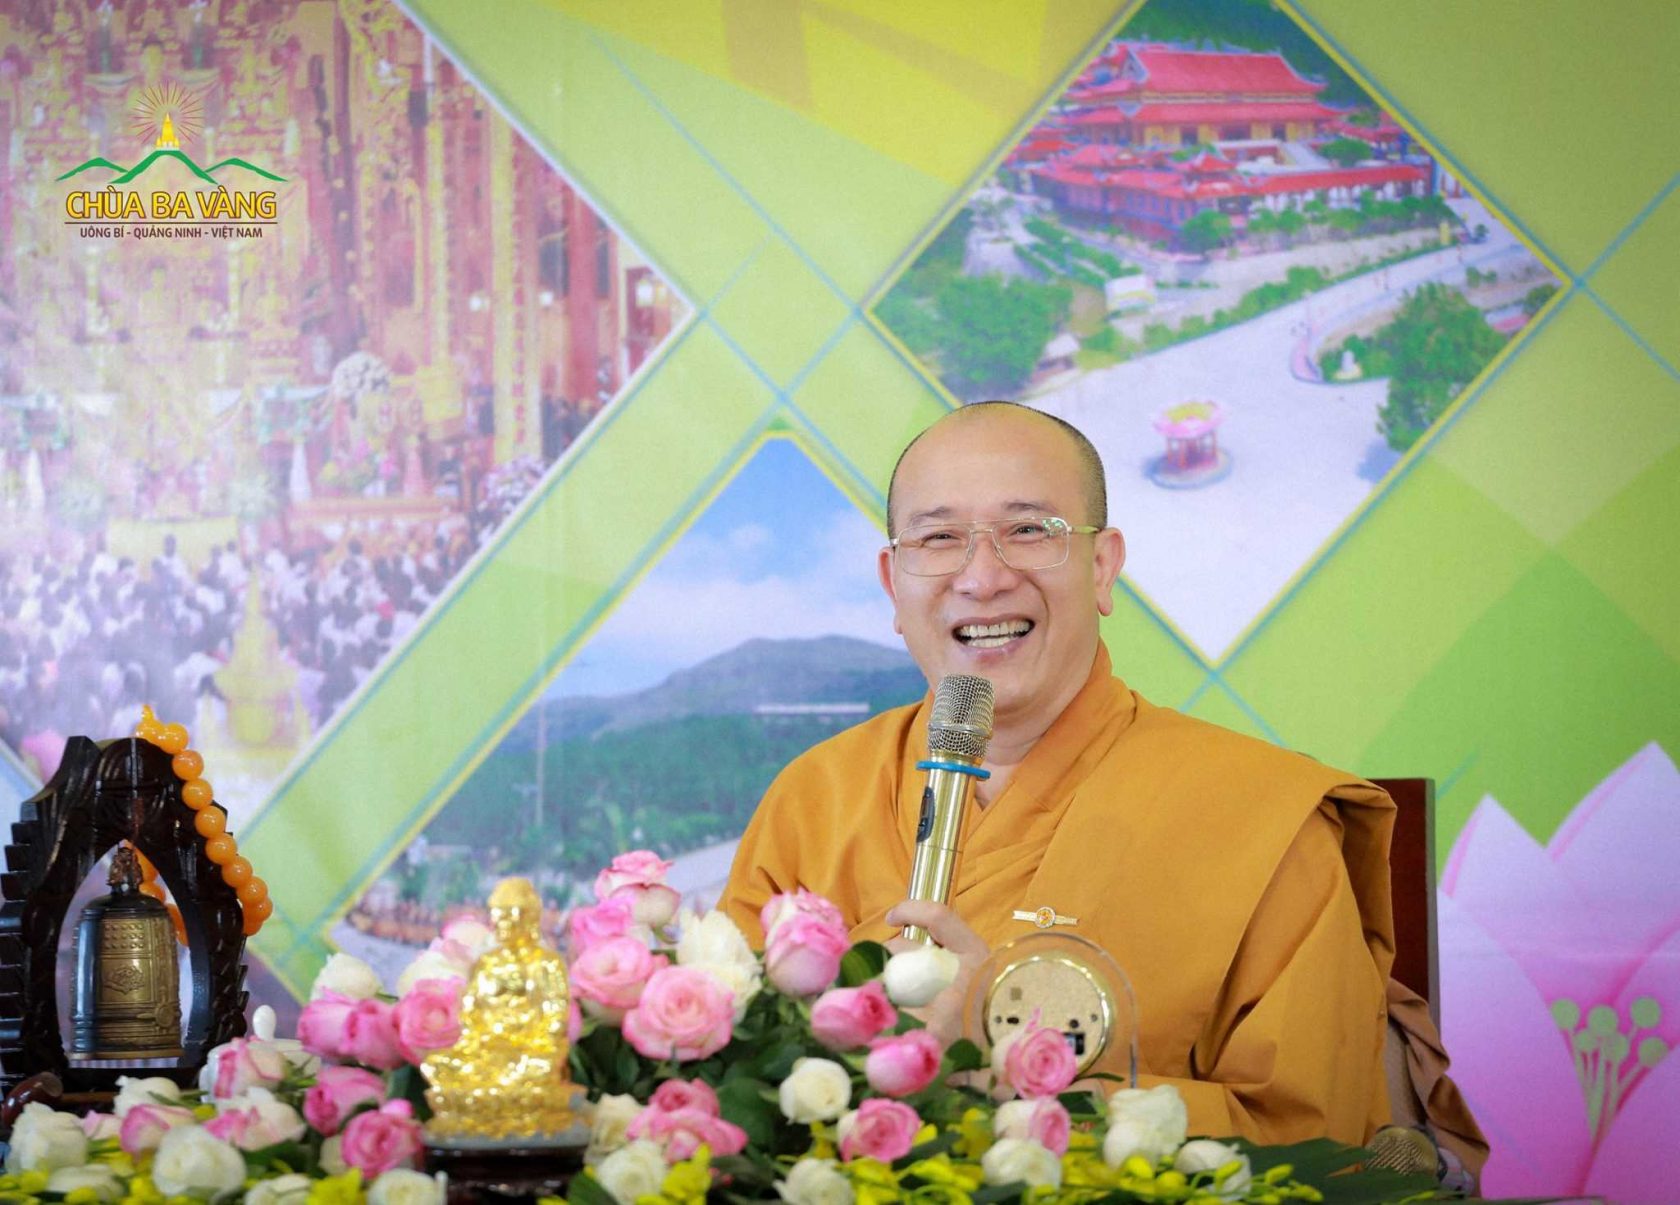 Sư Phụ Thích Trúc Thái Minh - Trụ trì chùa Ba Vàng 